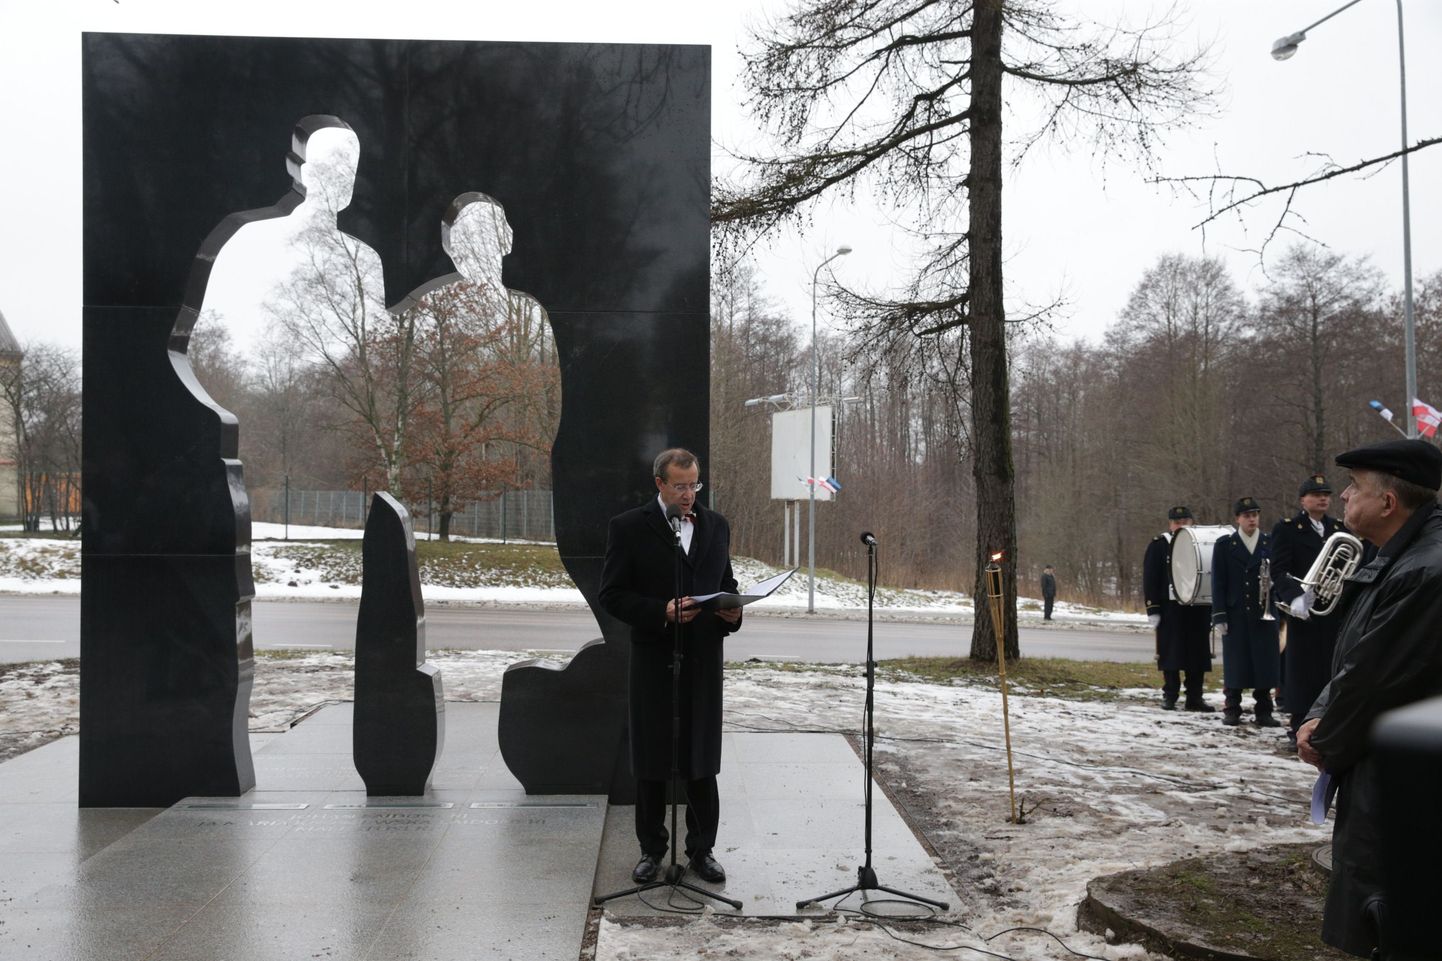 Eesti Sõjamuuseumis tähistati täna kindral Johan Laidoneri 130. sünniaastapäeva, lisaks avati ning pühitseti Johan ja Maria Laidoneri mälestusmärk.